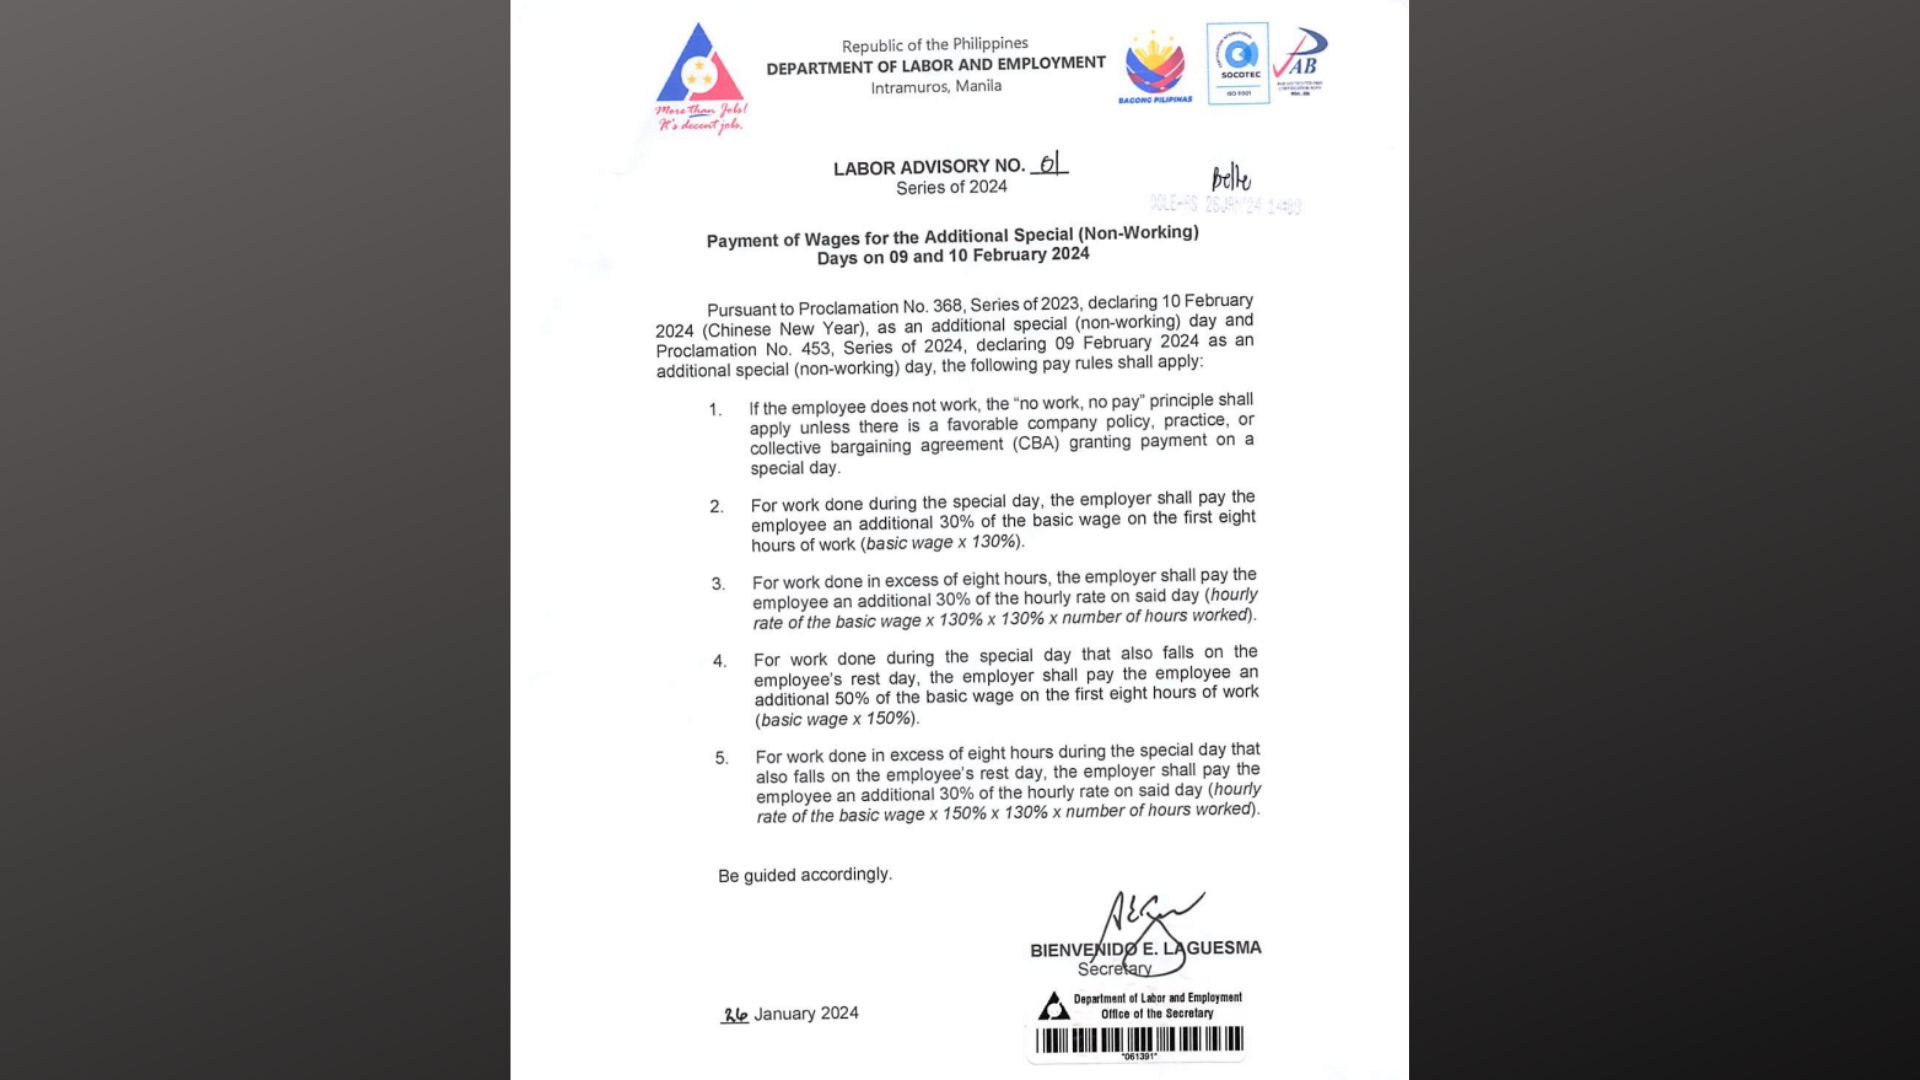 DOLE naglabas ng pay rules para sa Feb. 9 na deklaradong special non-working day